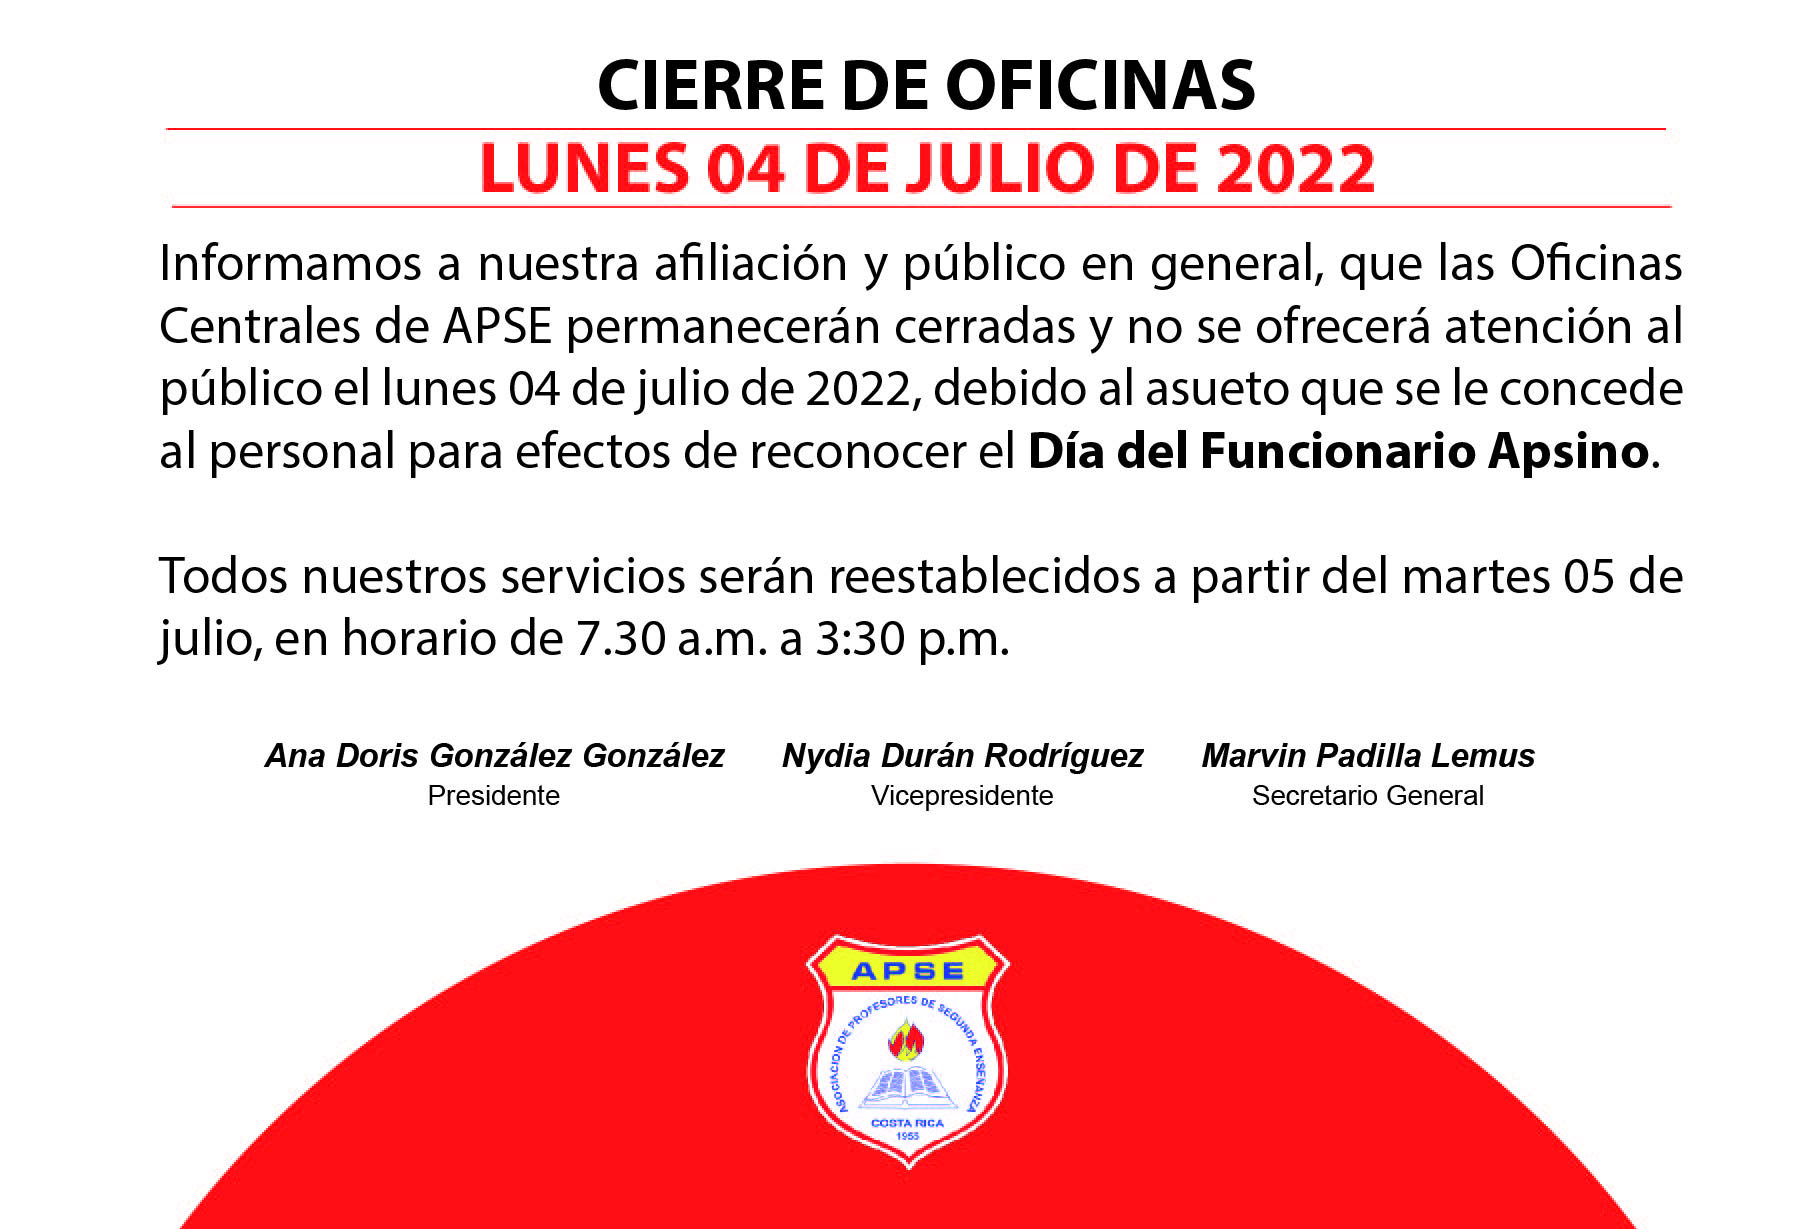 CIERRE DE OFICINAS, LUNES 04 DE JULIO DE 2022